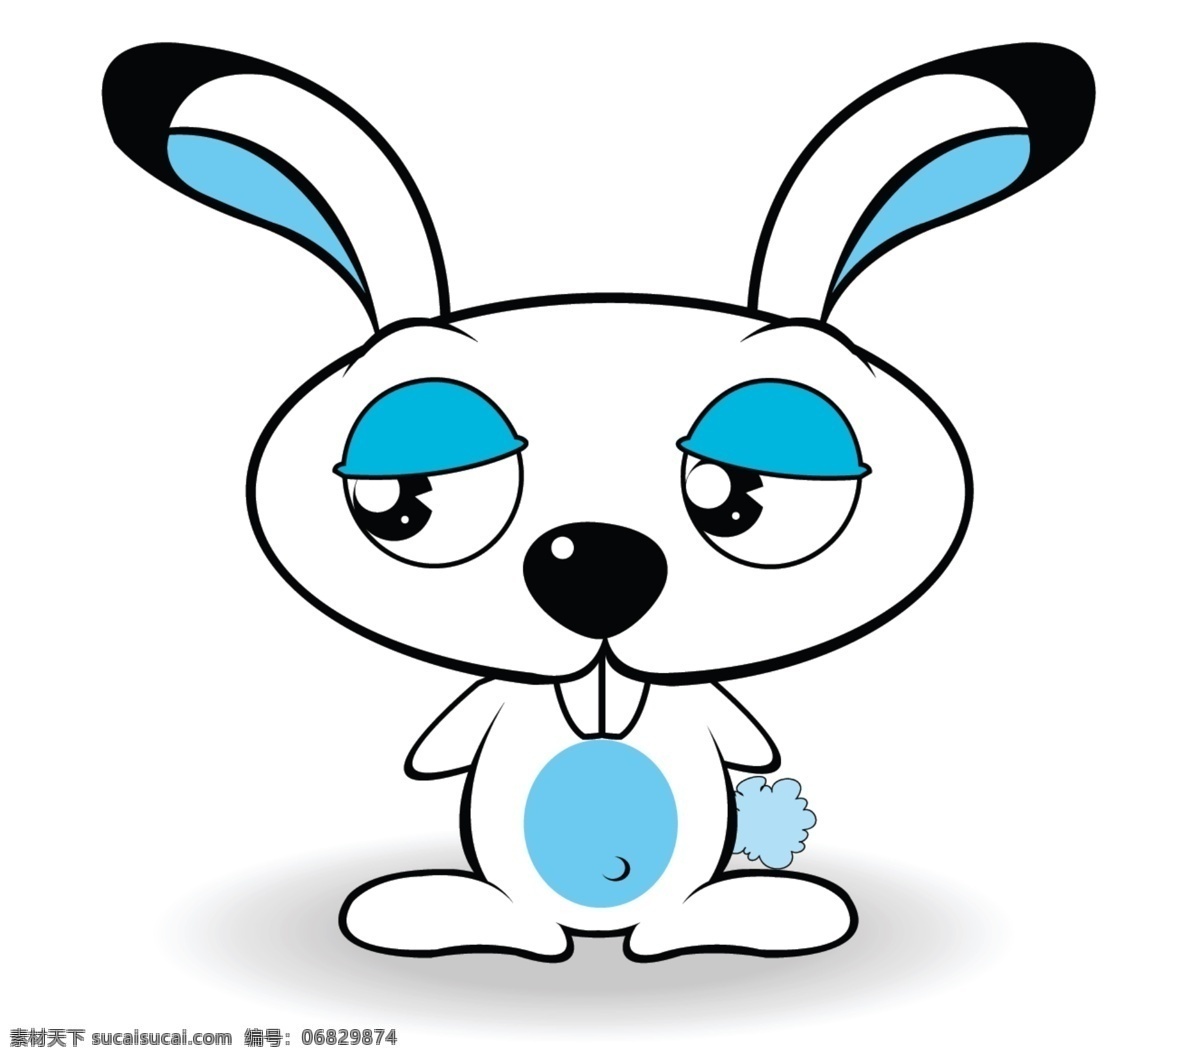 可爱 兔子 系列 可爱卡通兔子 小兔子 psd源文件